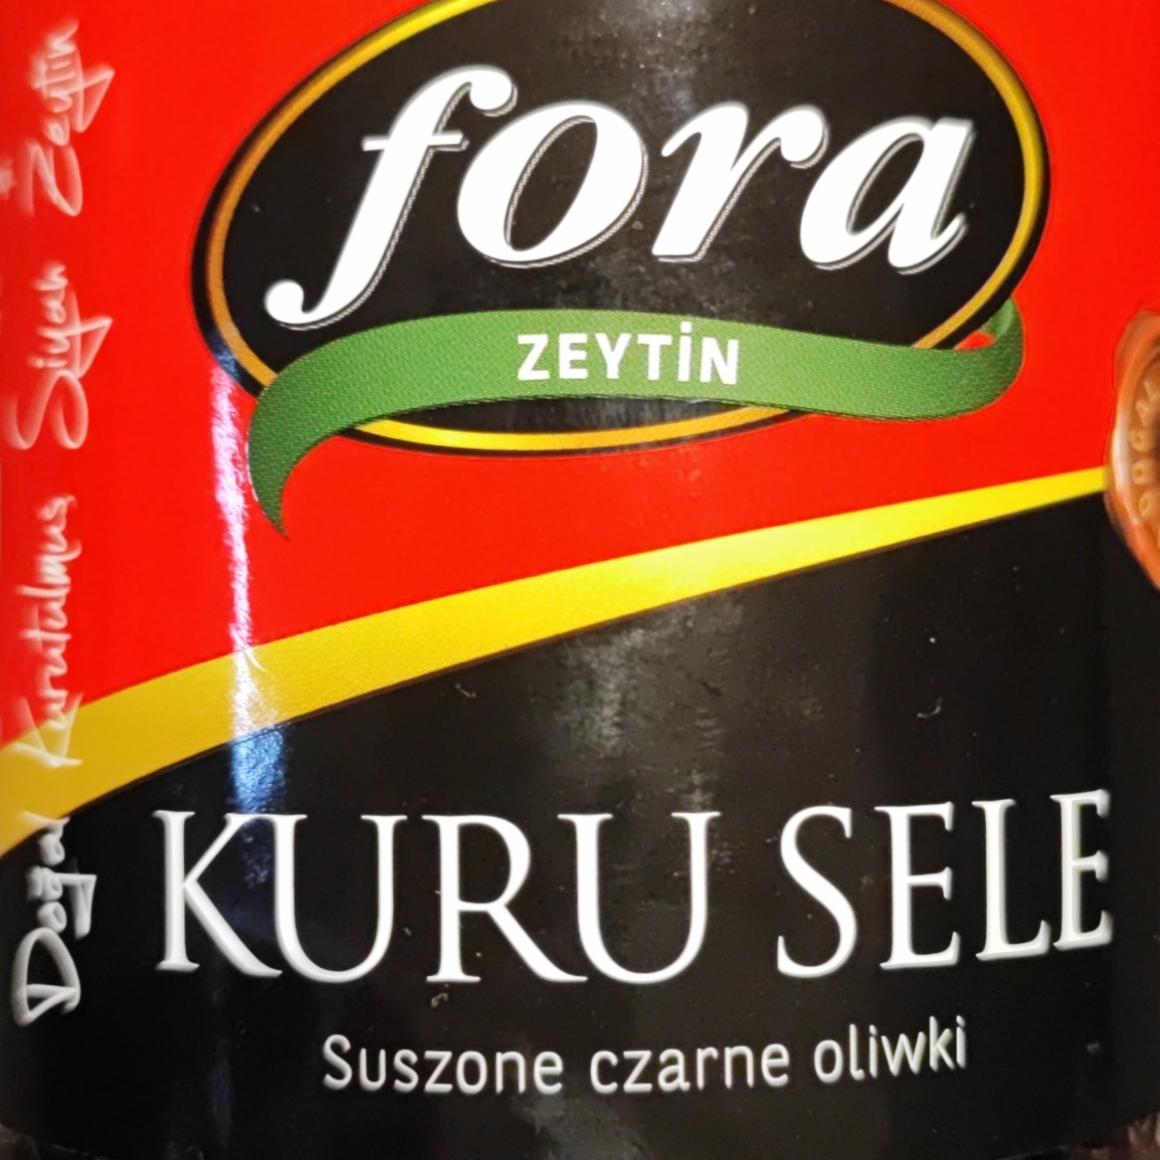 Fotografie - Suszone czarne oliwki kuru sele Fora zeytin